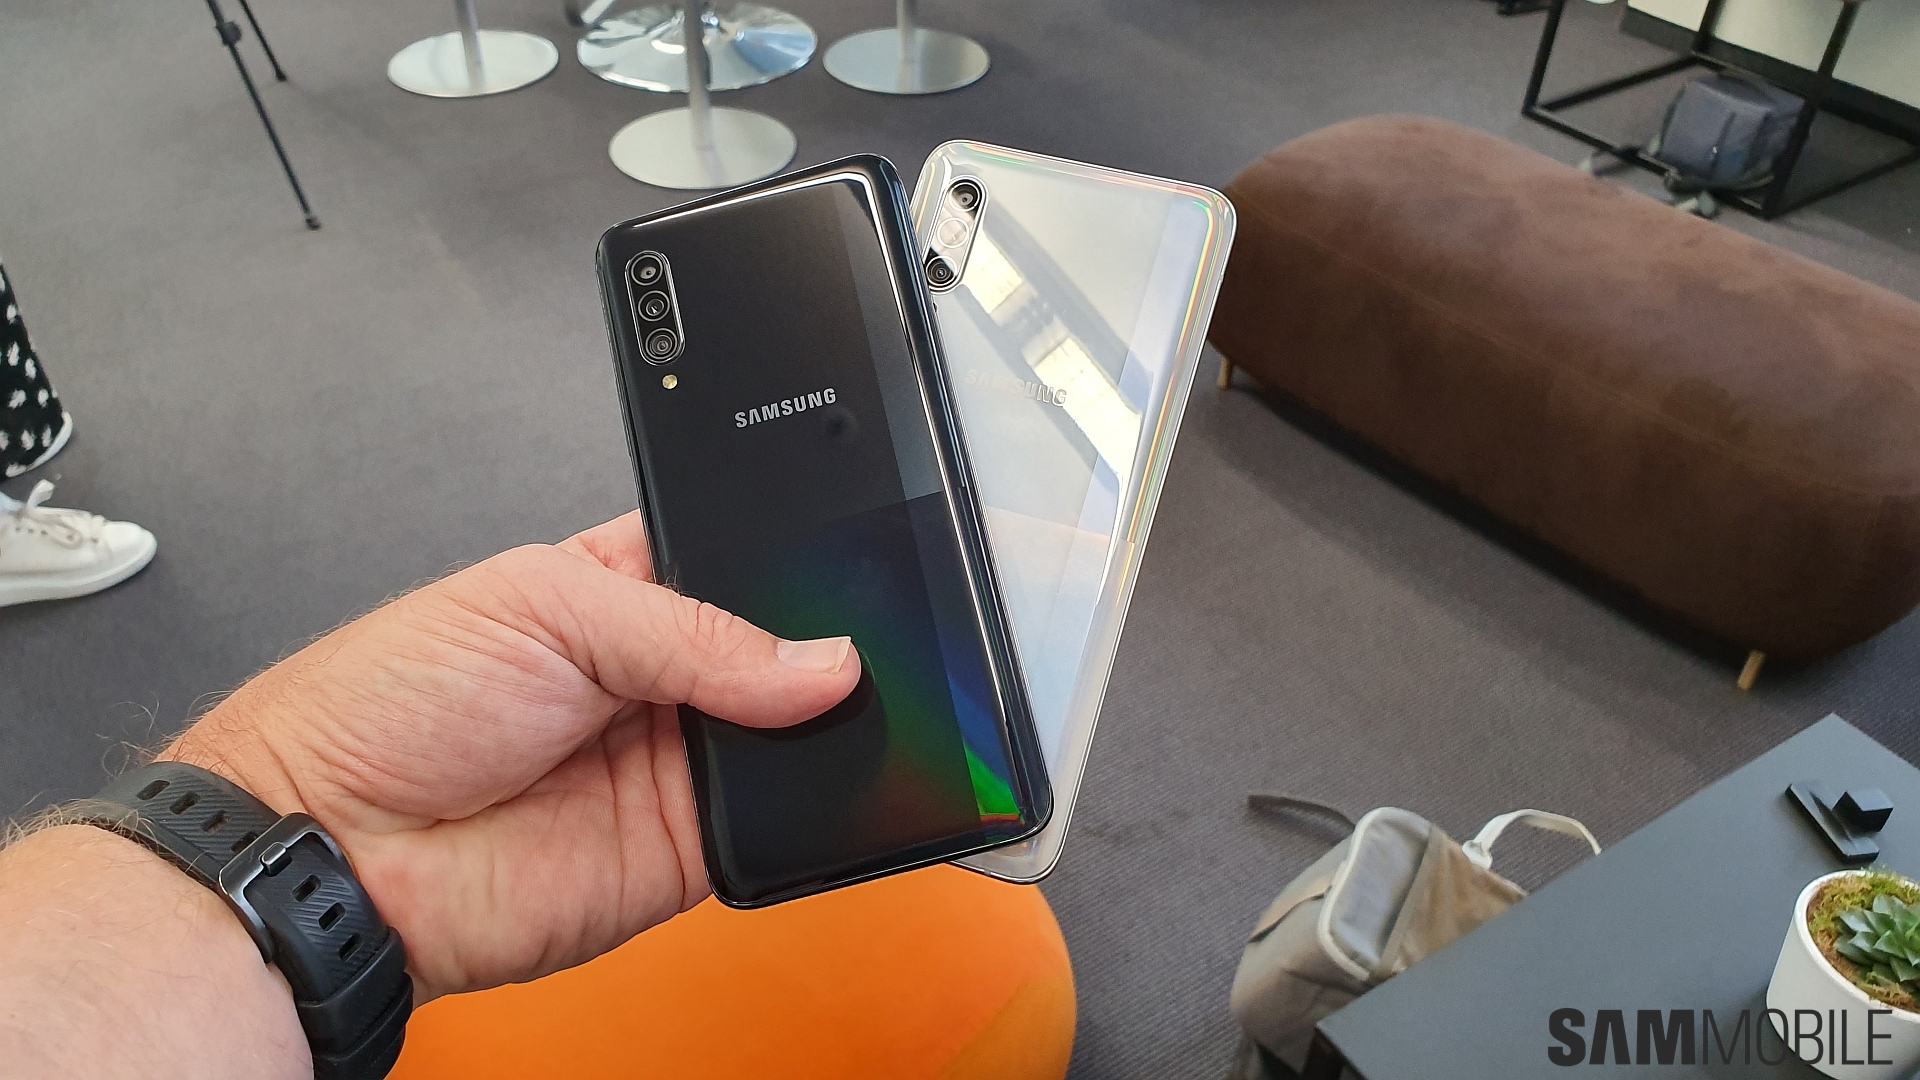 Samsung Galaxy A71 Отзывы